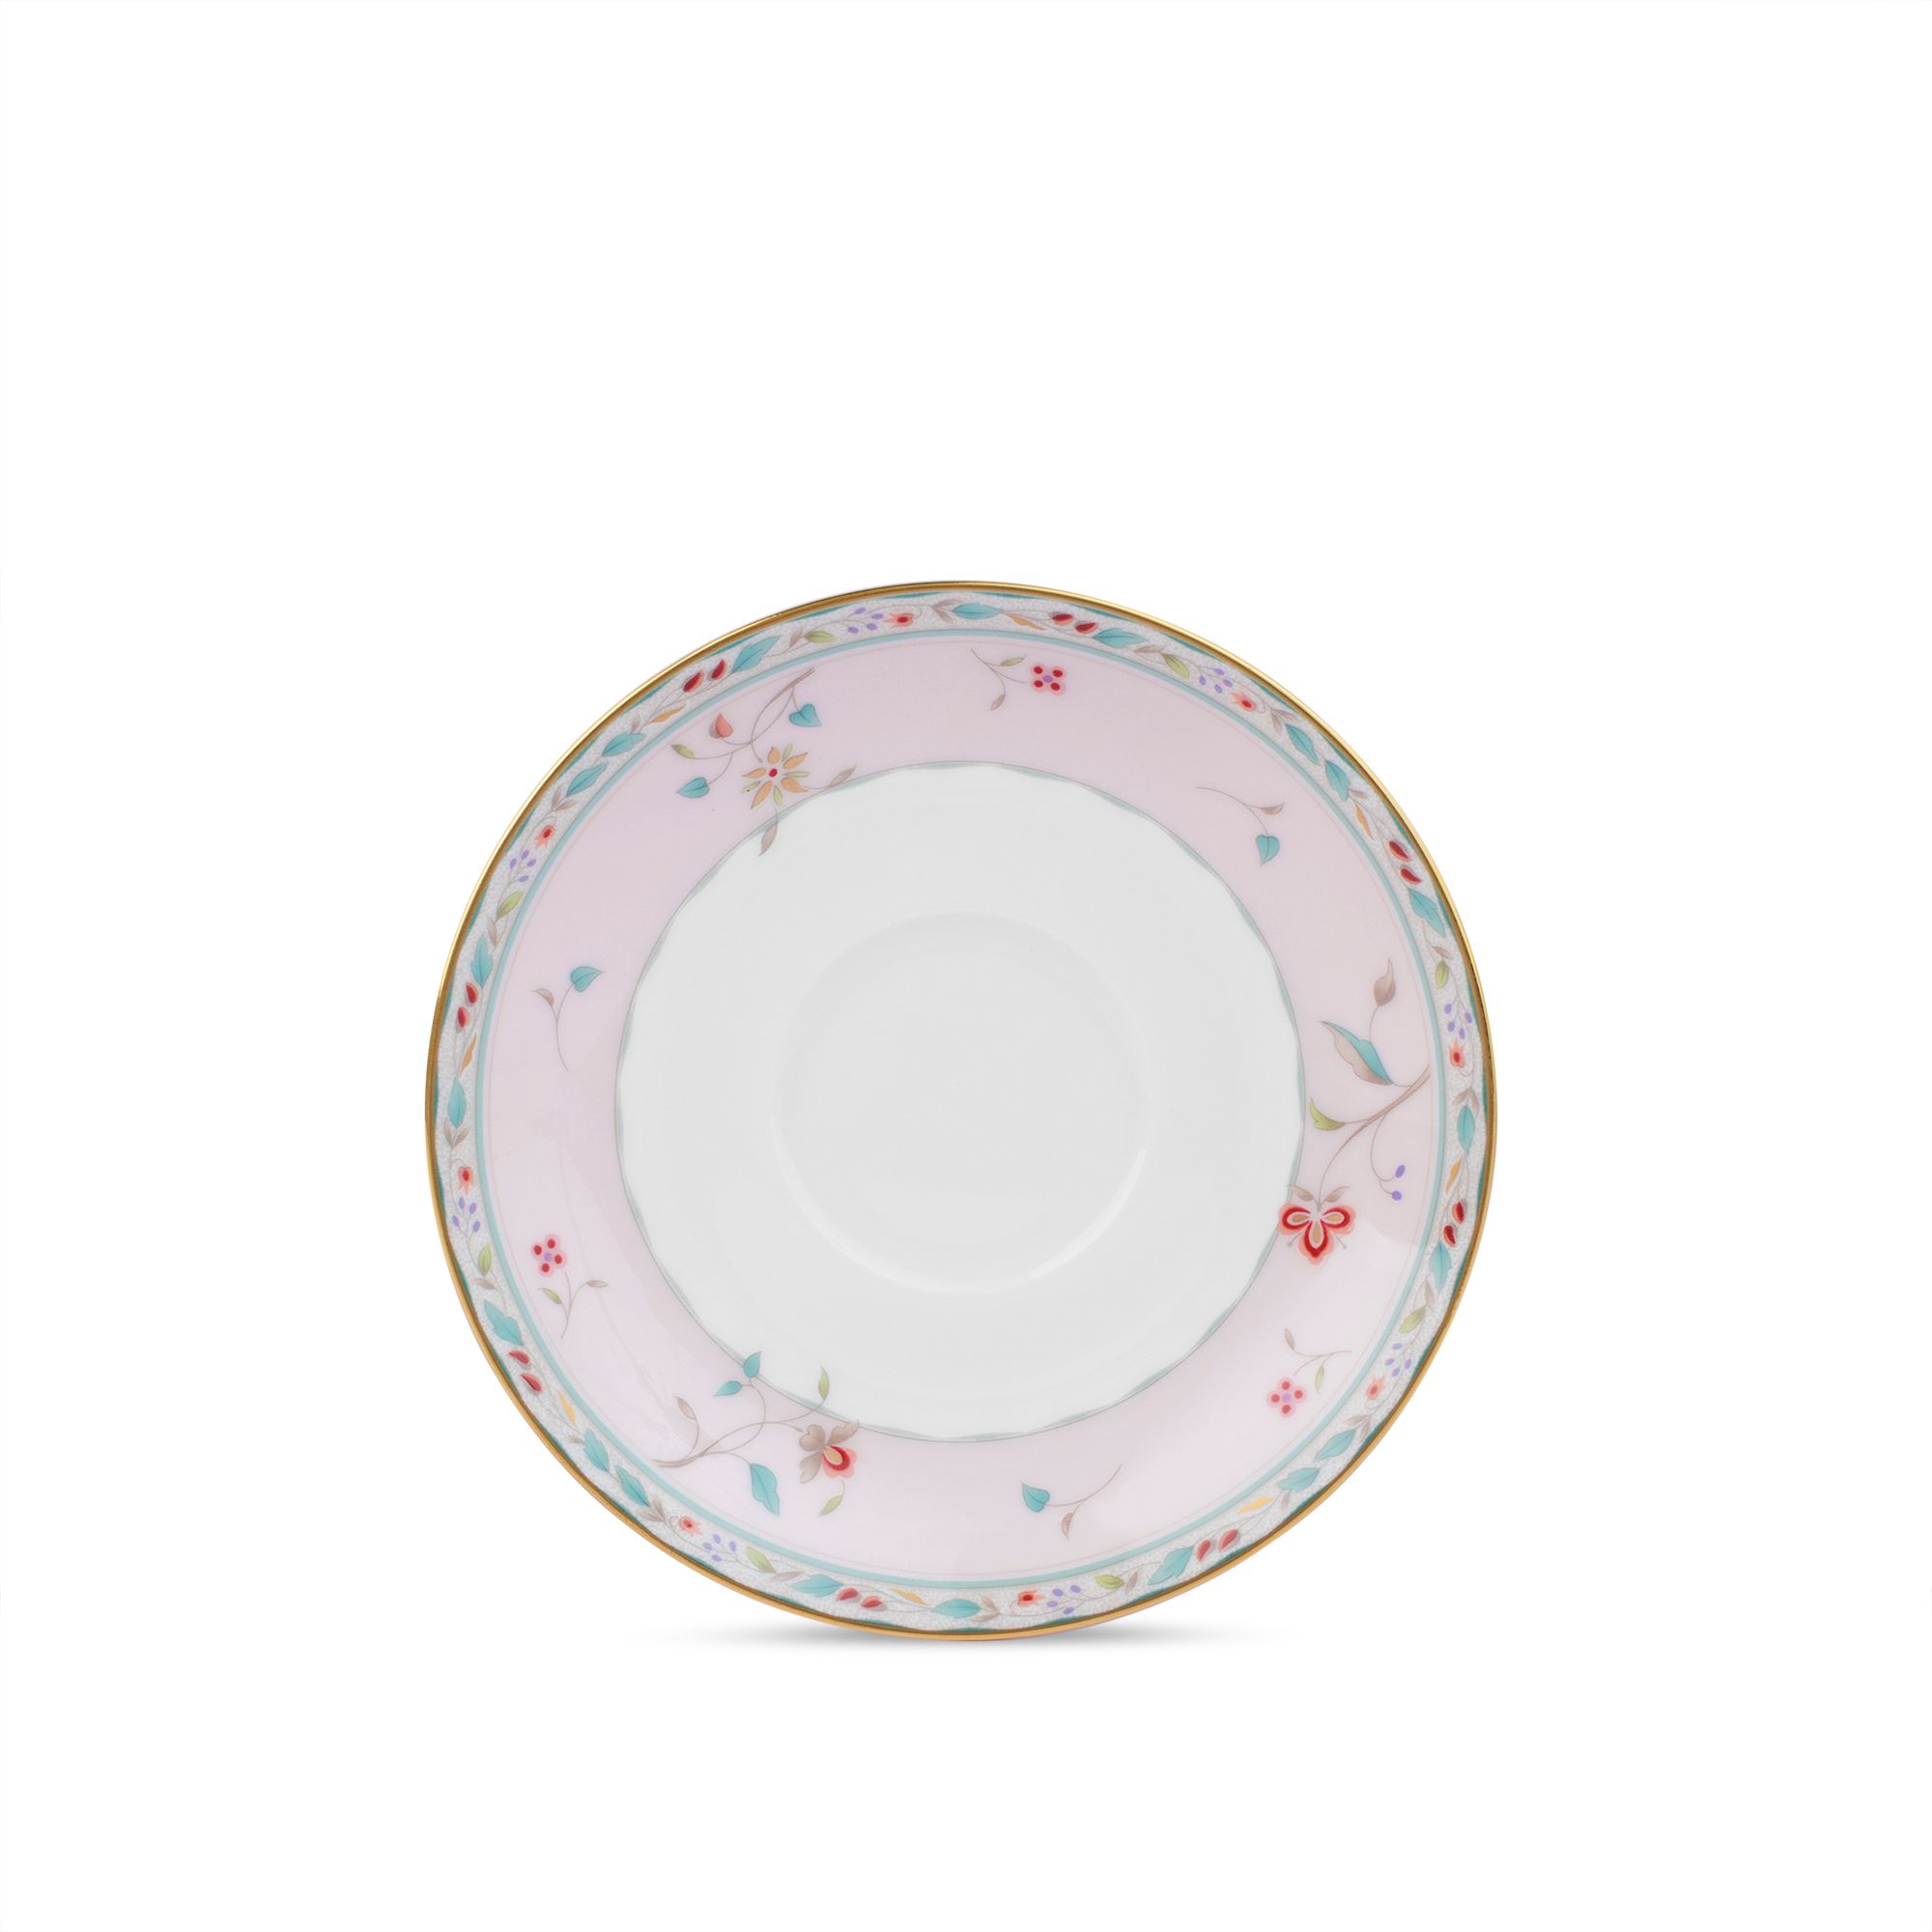  Đĩa lót chén trà (tách trà) màu hồng 151mm  | Hana Sarasa 4409-5L-97217S 